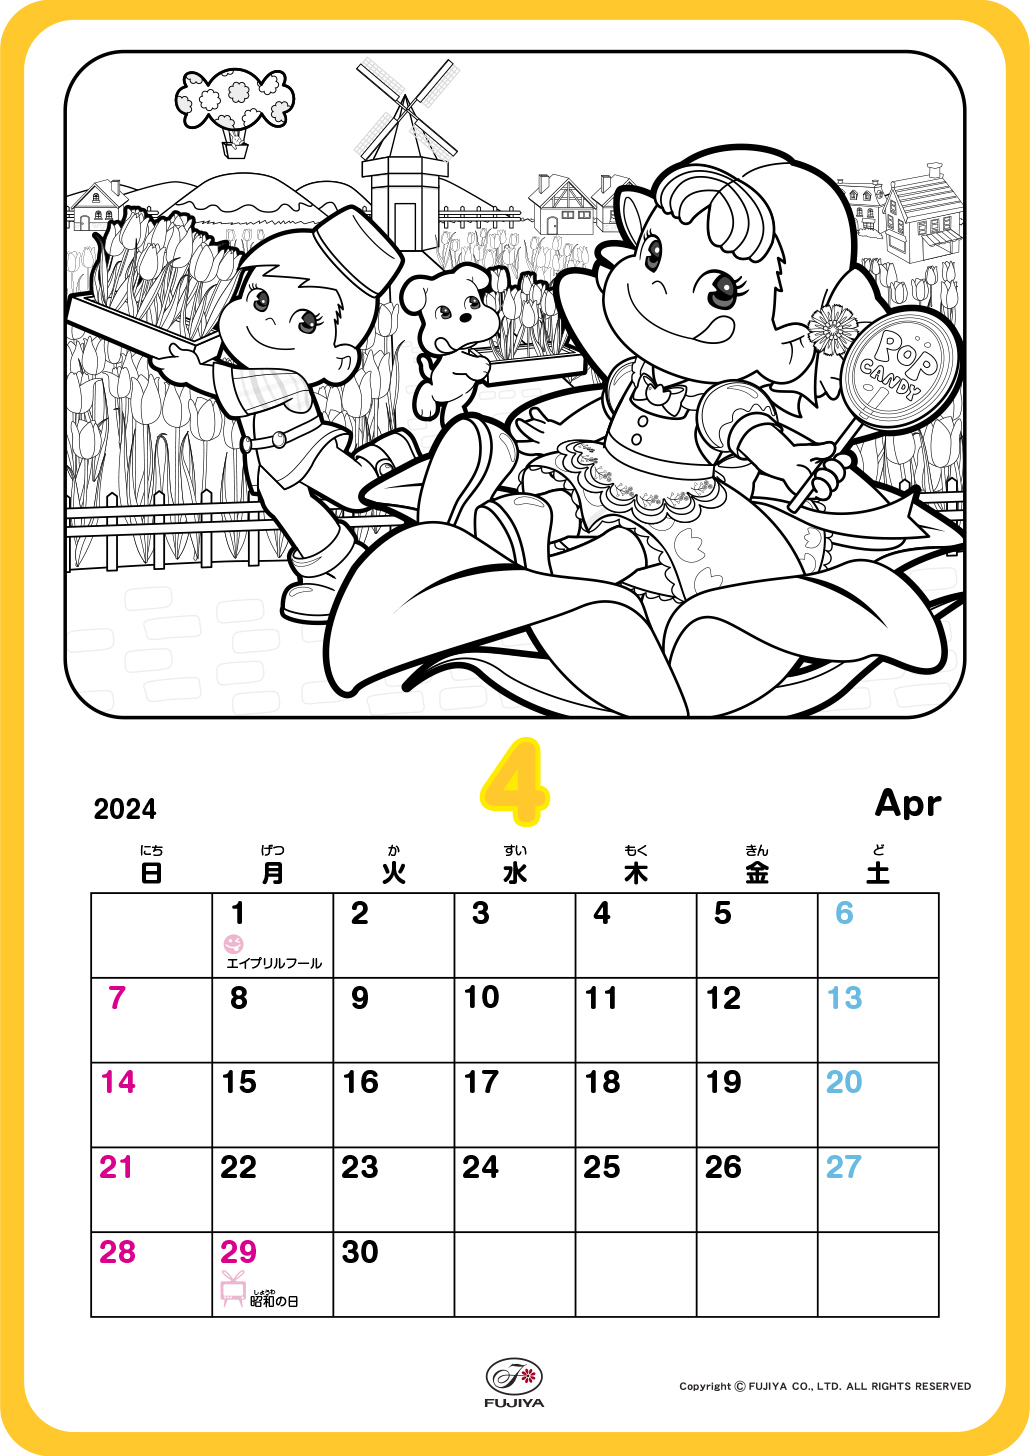 ペコちゃん、ポコちゃん、チューリップ畑で春満喫してるね♪ぬったあとは、カレンダーとして使ってね。